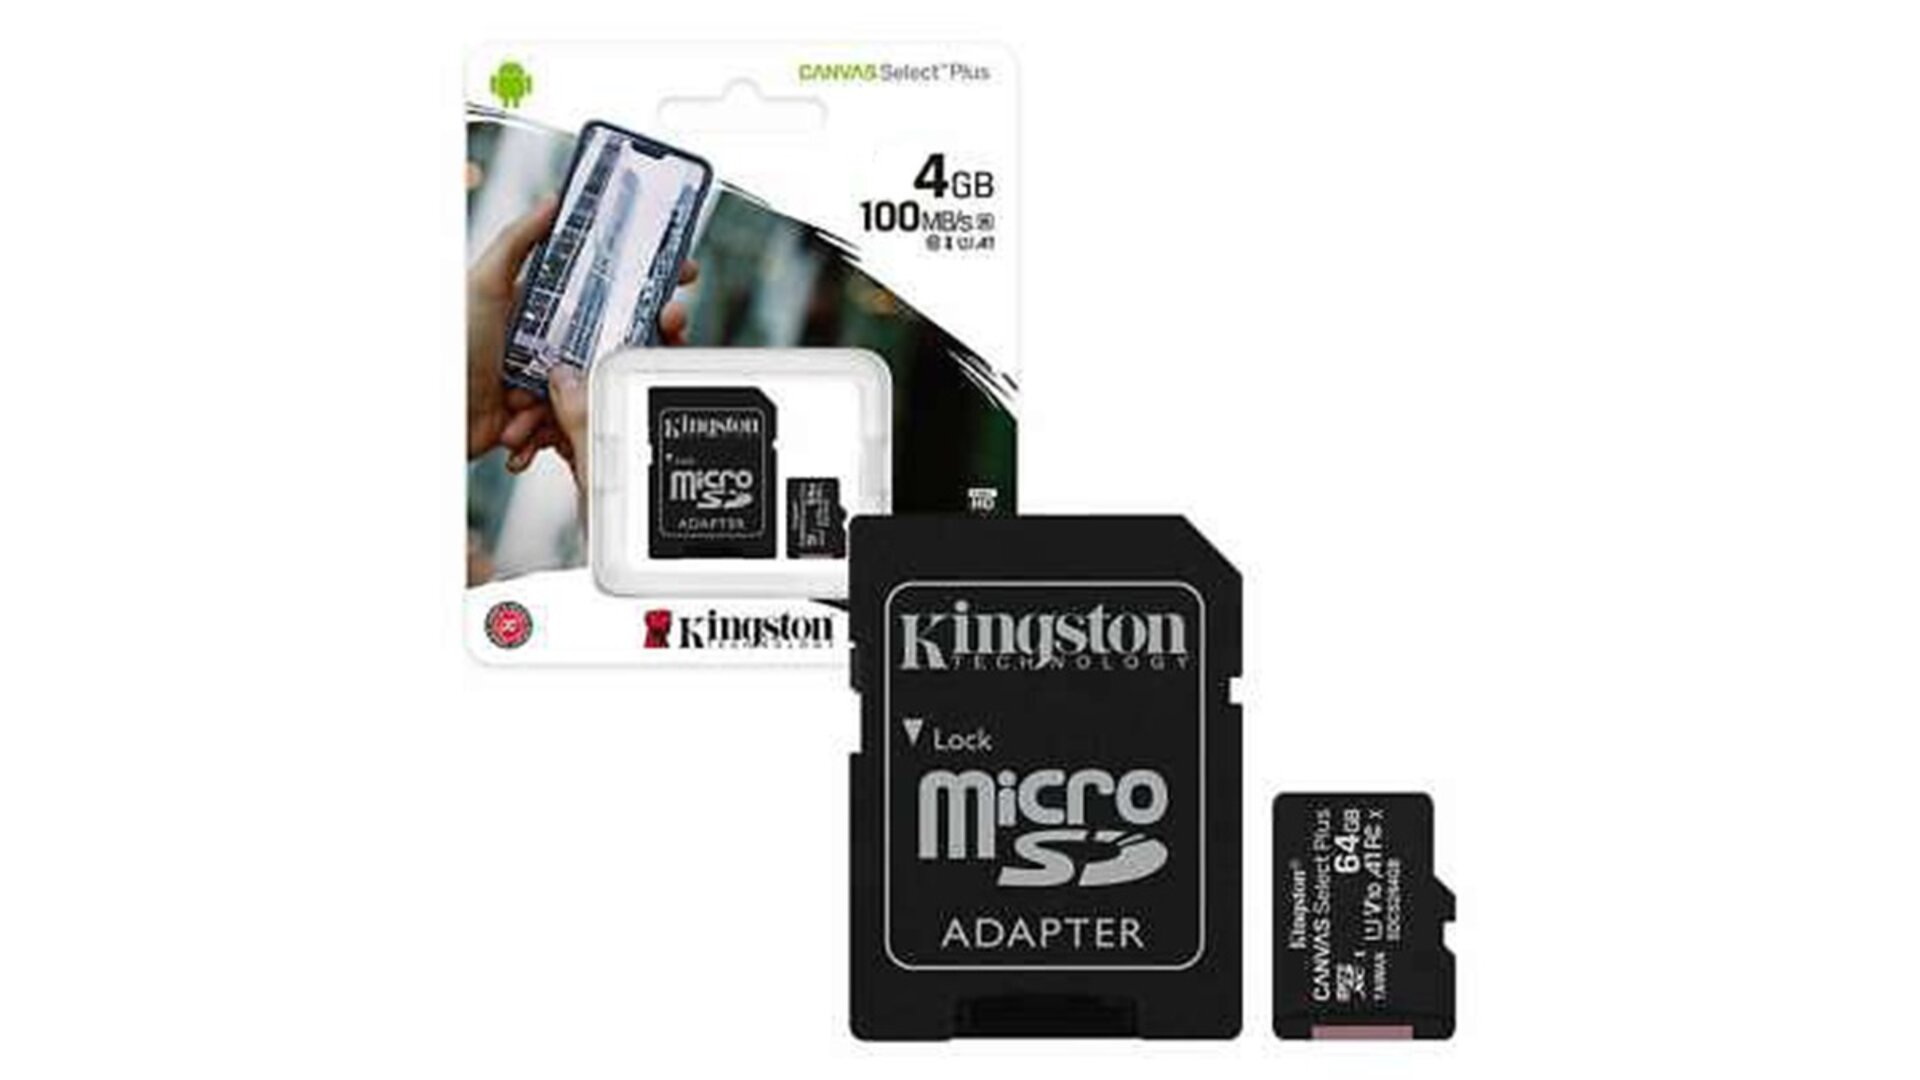 Kingston 4GB microSDHC მეხსიერების ბარათი